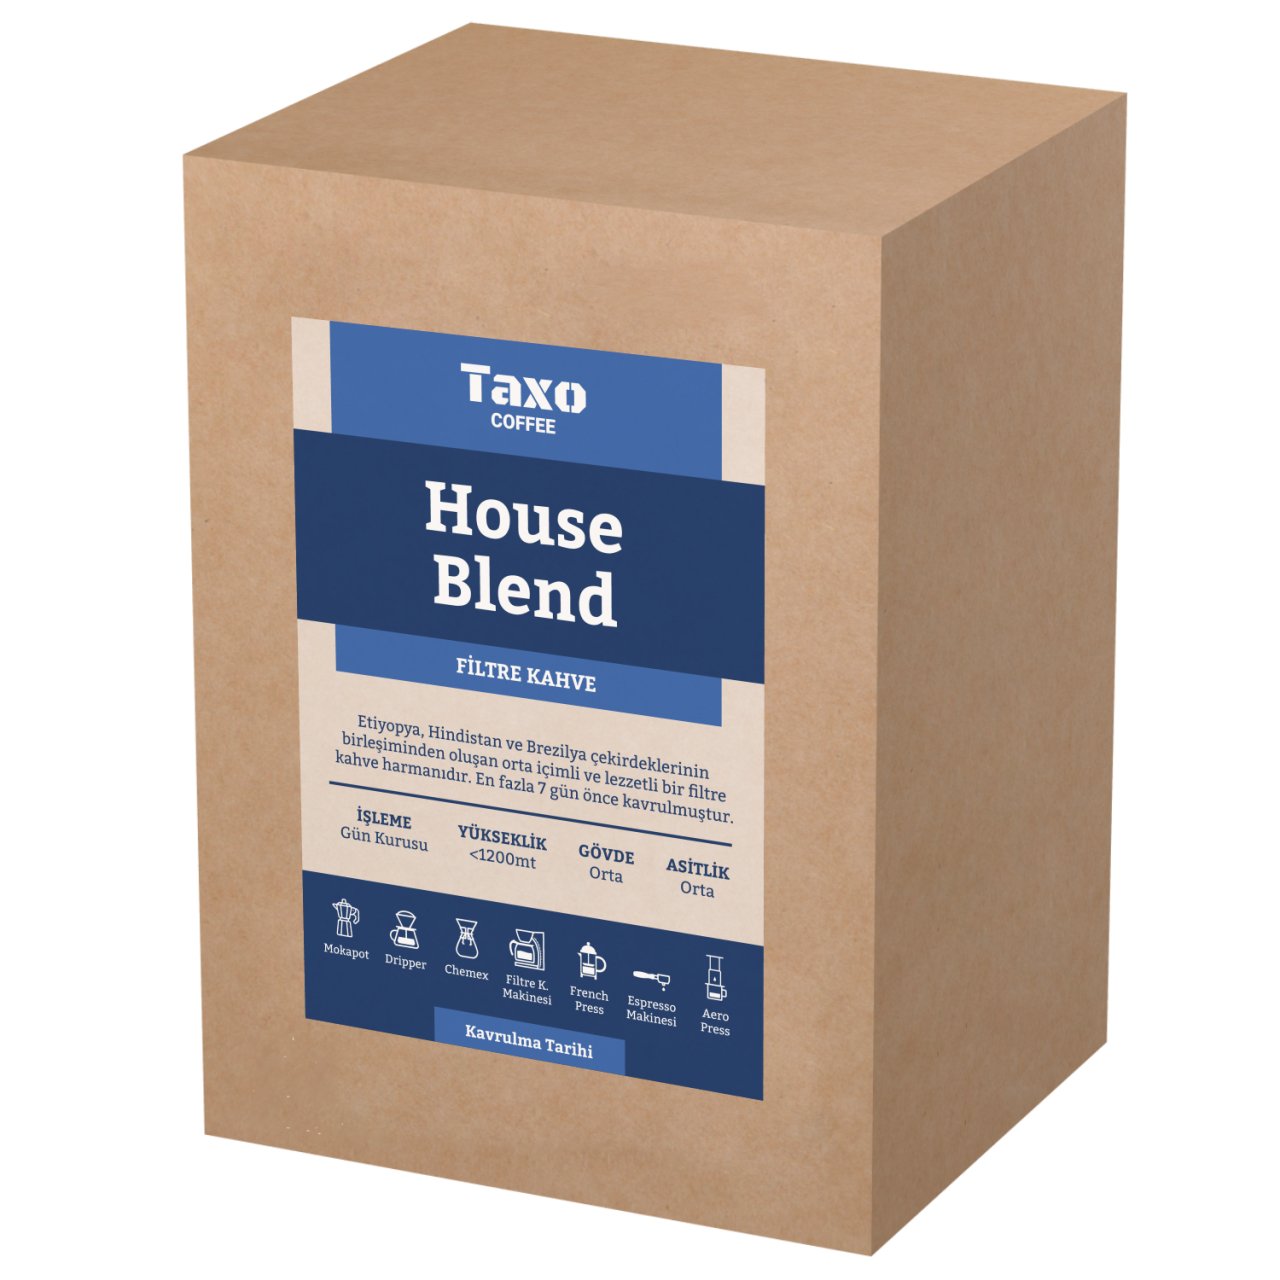 House Blend 5kg Filtre Kahve